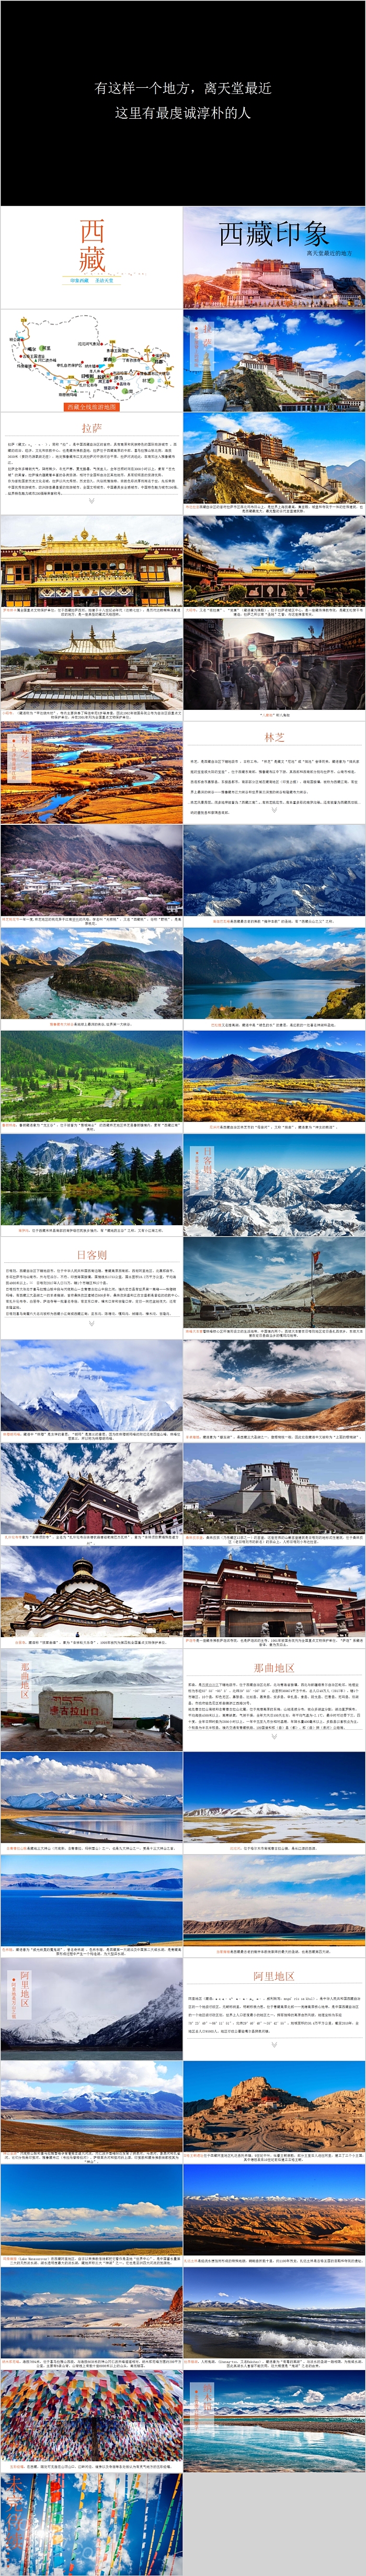 西藏印象旅游相册PPT模板